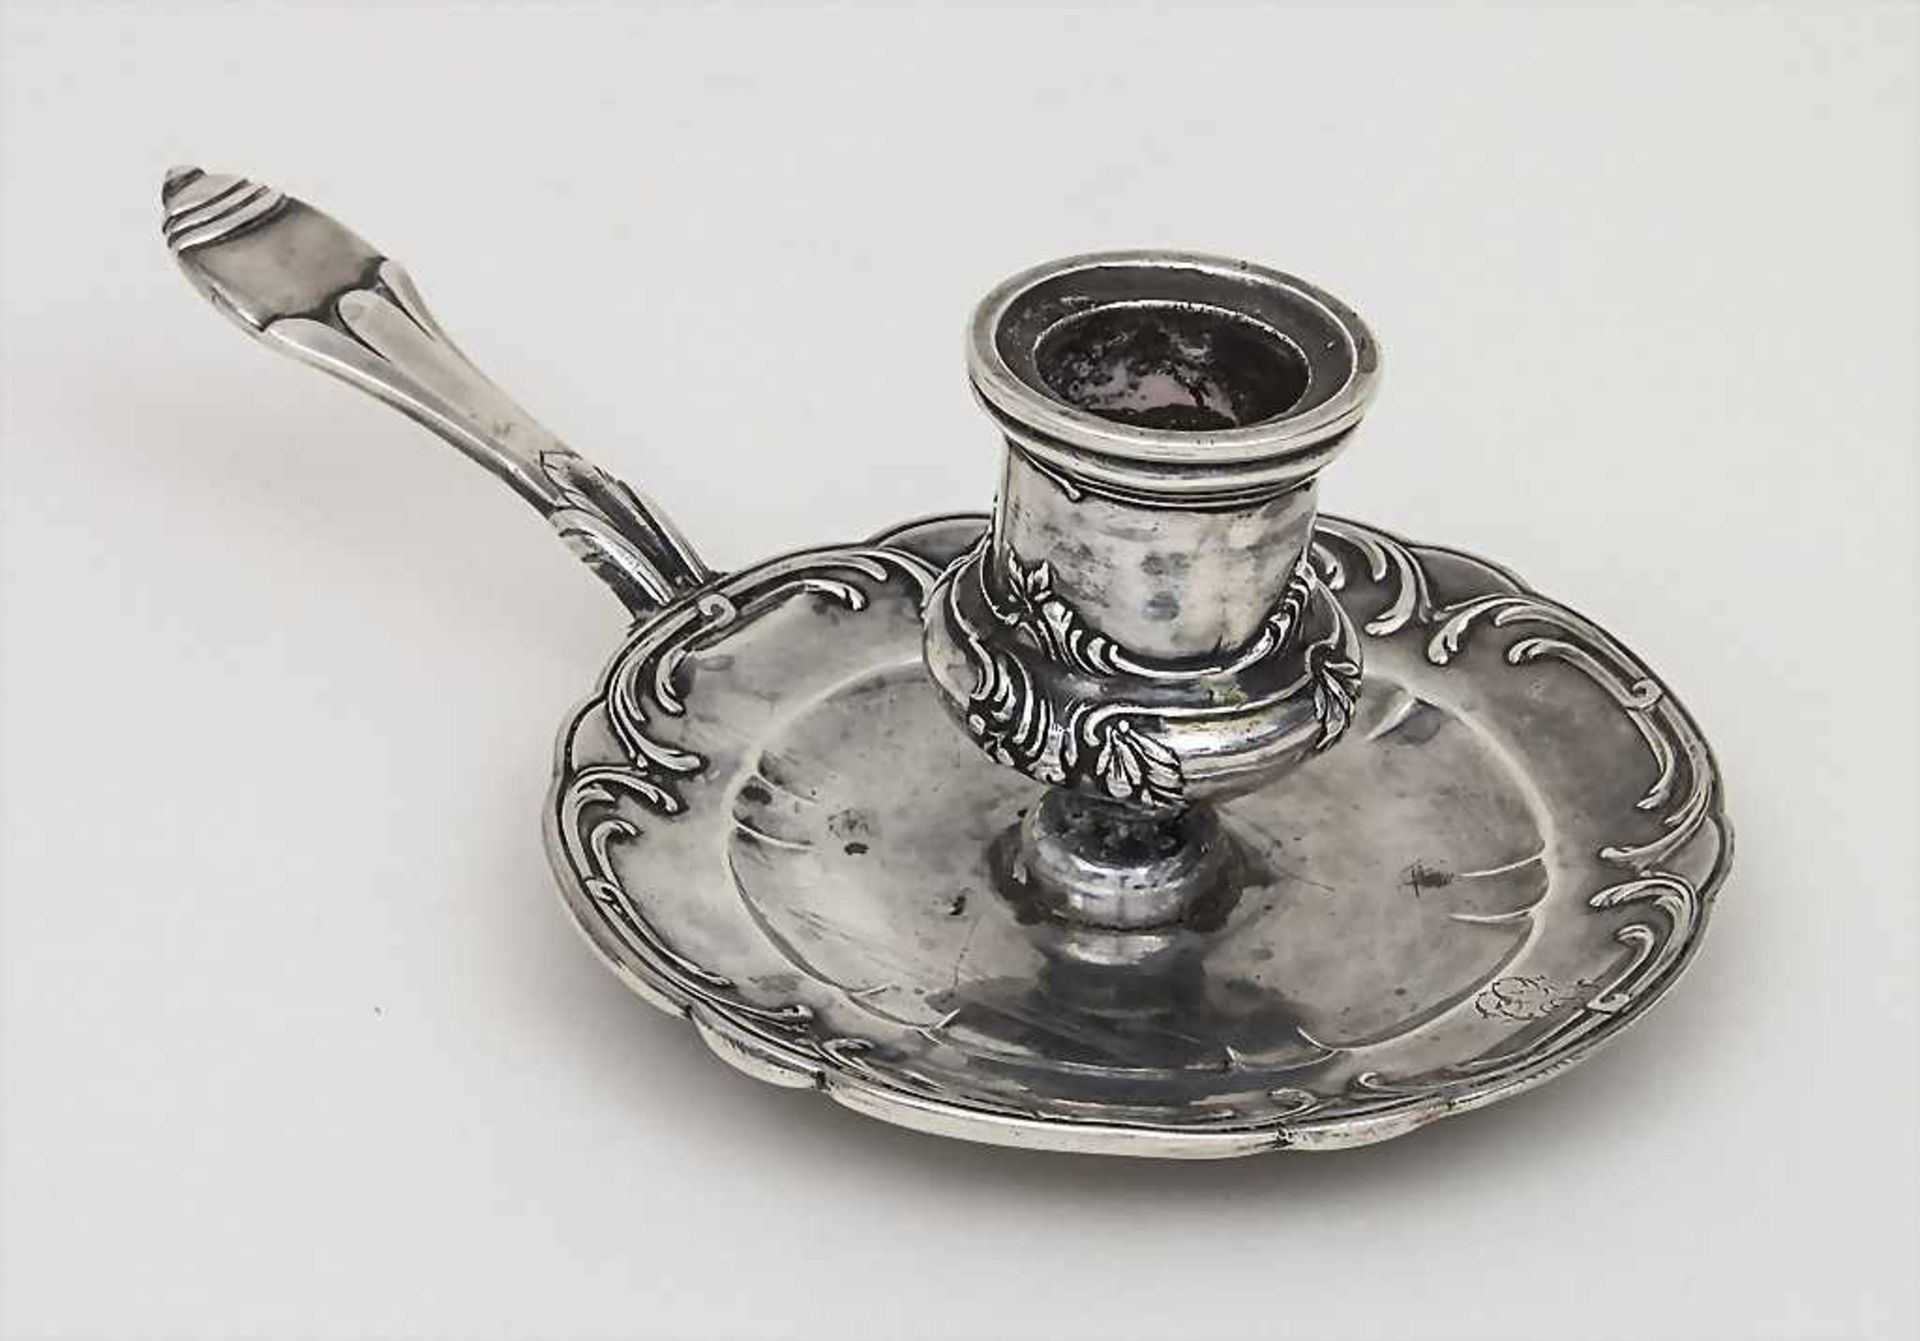 Handleuchter / A portable candlestick, Edmond Tetard, Paris, 1880-1903Material: 950 Silber,